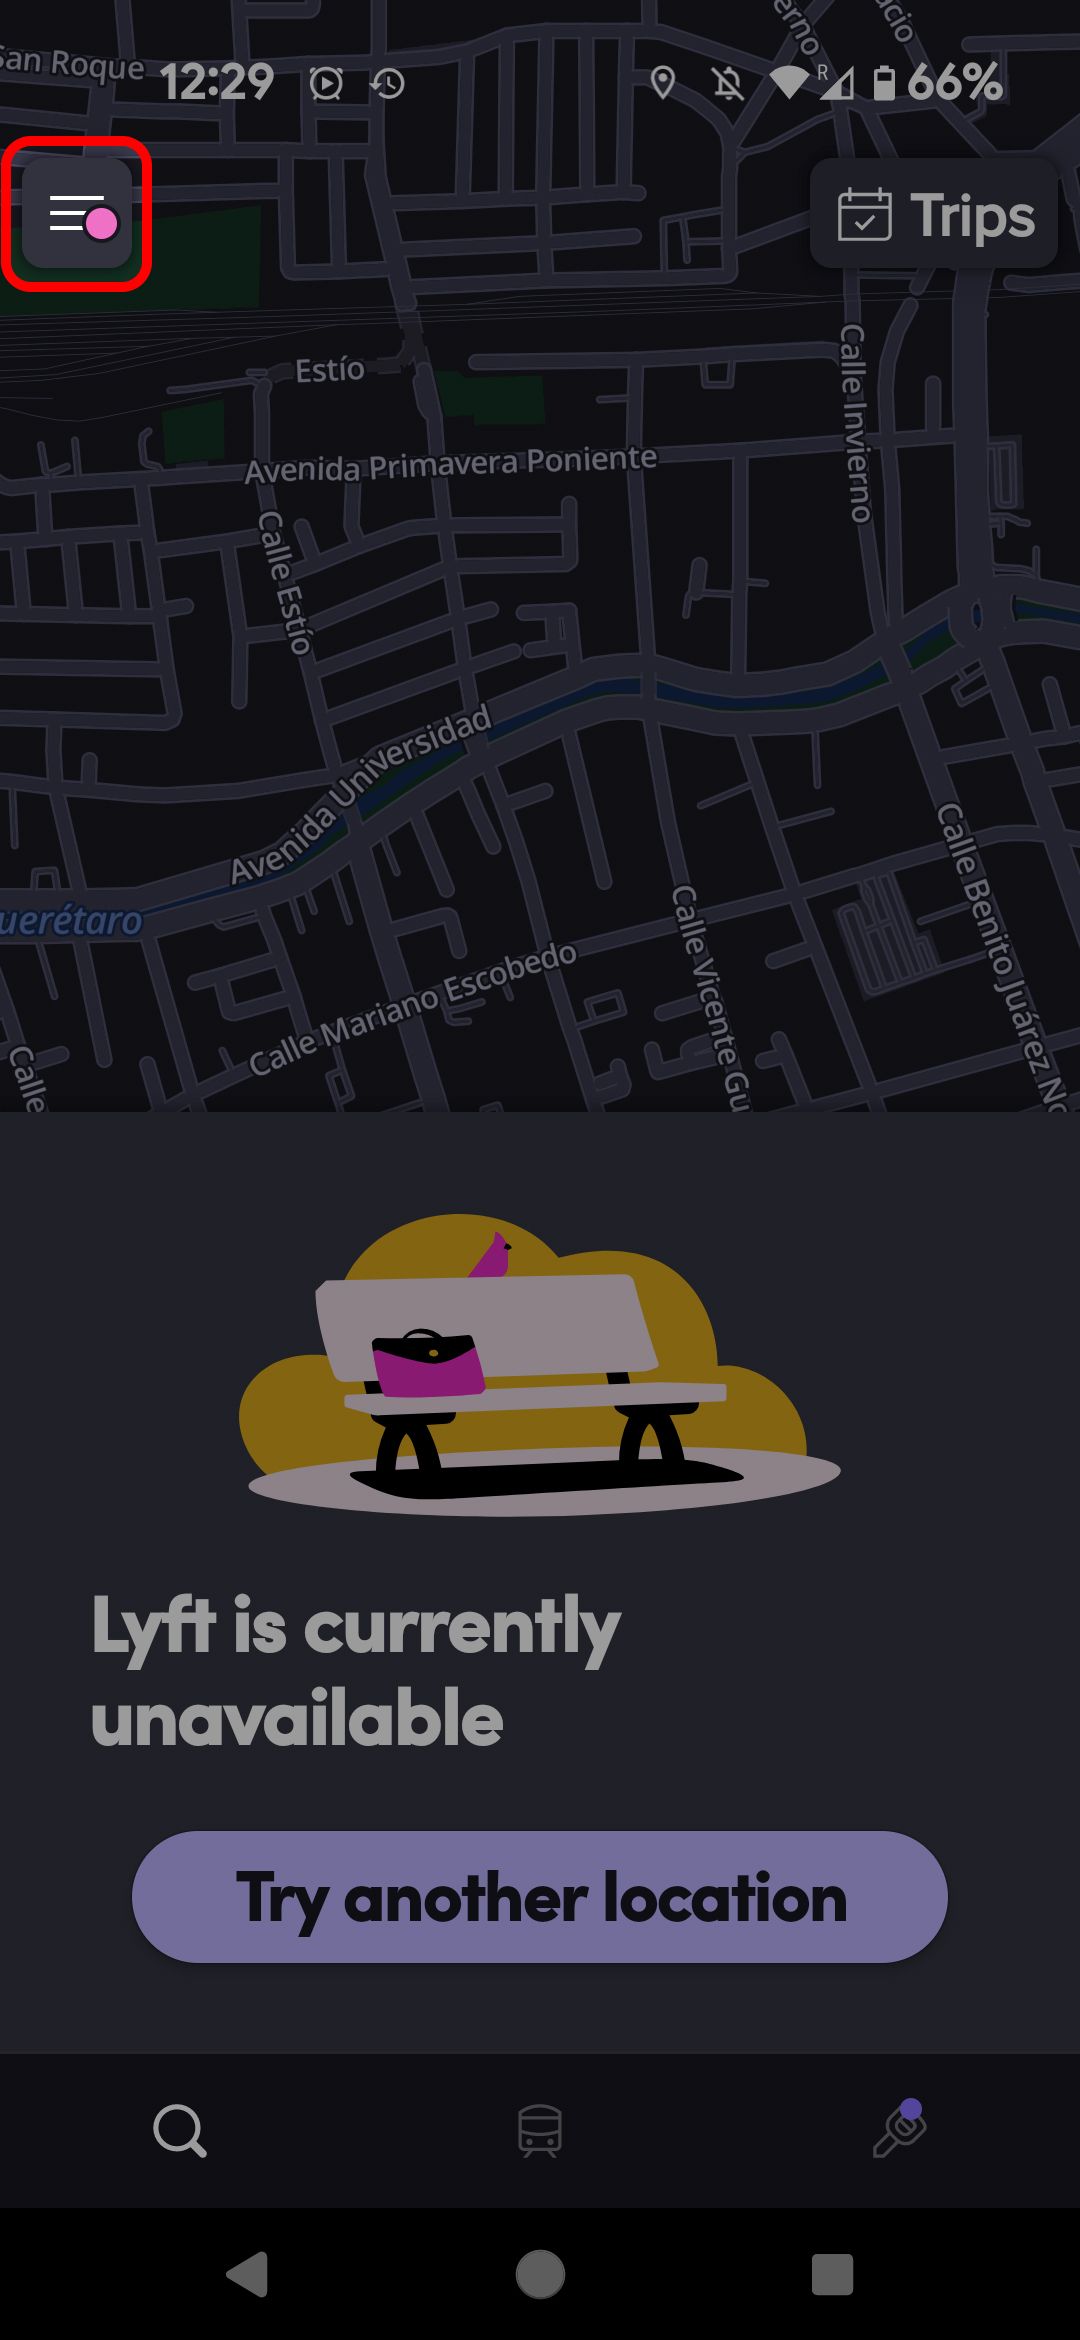 Tela inicial do Lyft Rider destacando o ícone do menu